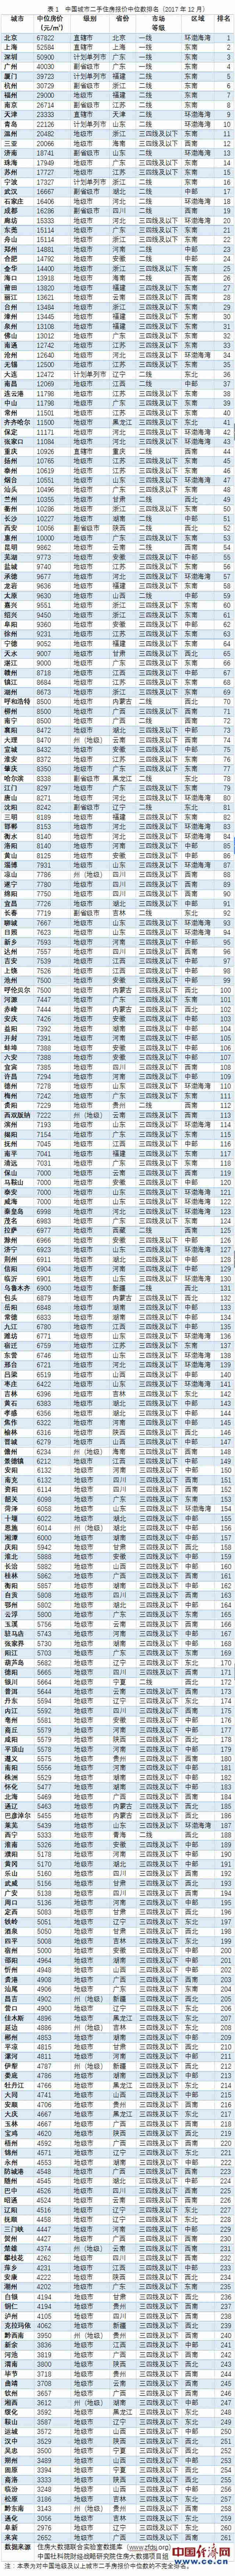 湖南县城房价排名_最新||2020年湖南各市州房价及排名出炉,怀化在这里